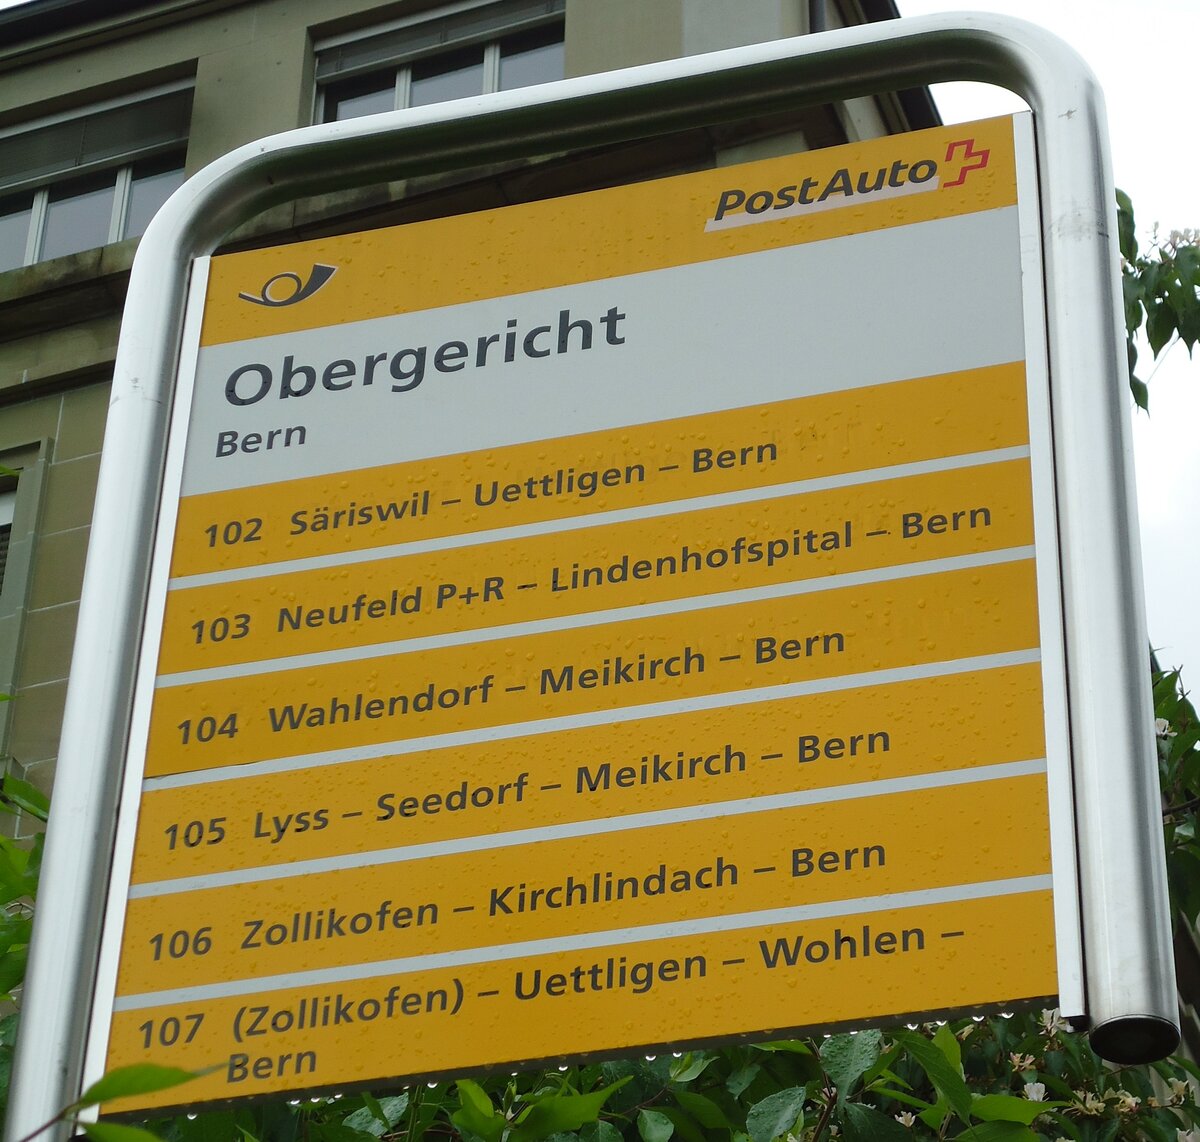 (144'897) - PostAuto-Haltestellenschild - Bern, Obergericht - am 10. Juni 2013